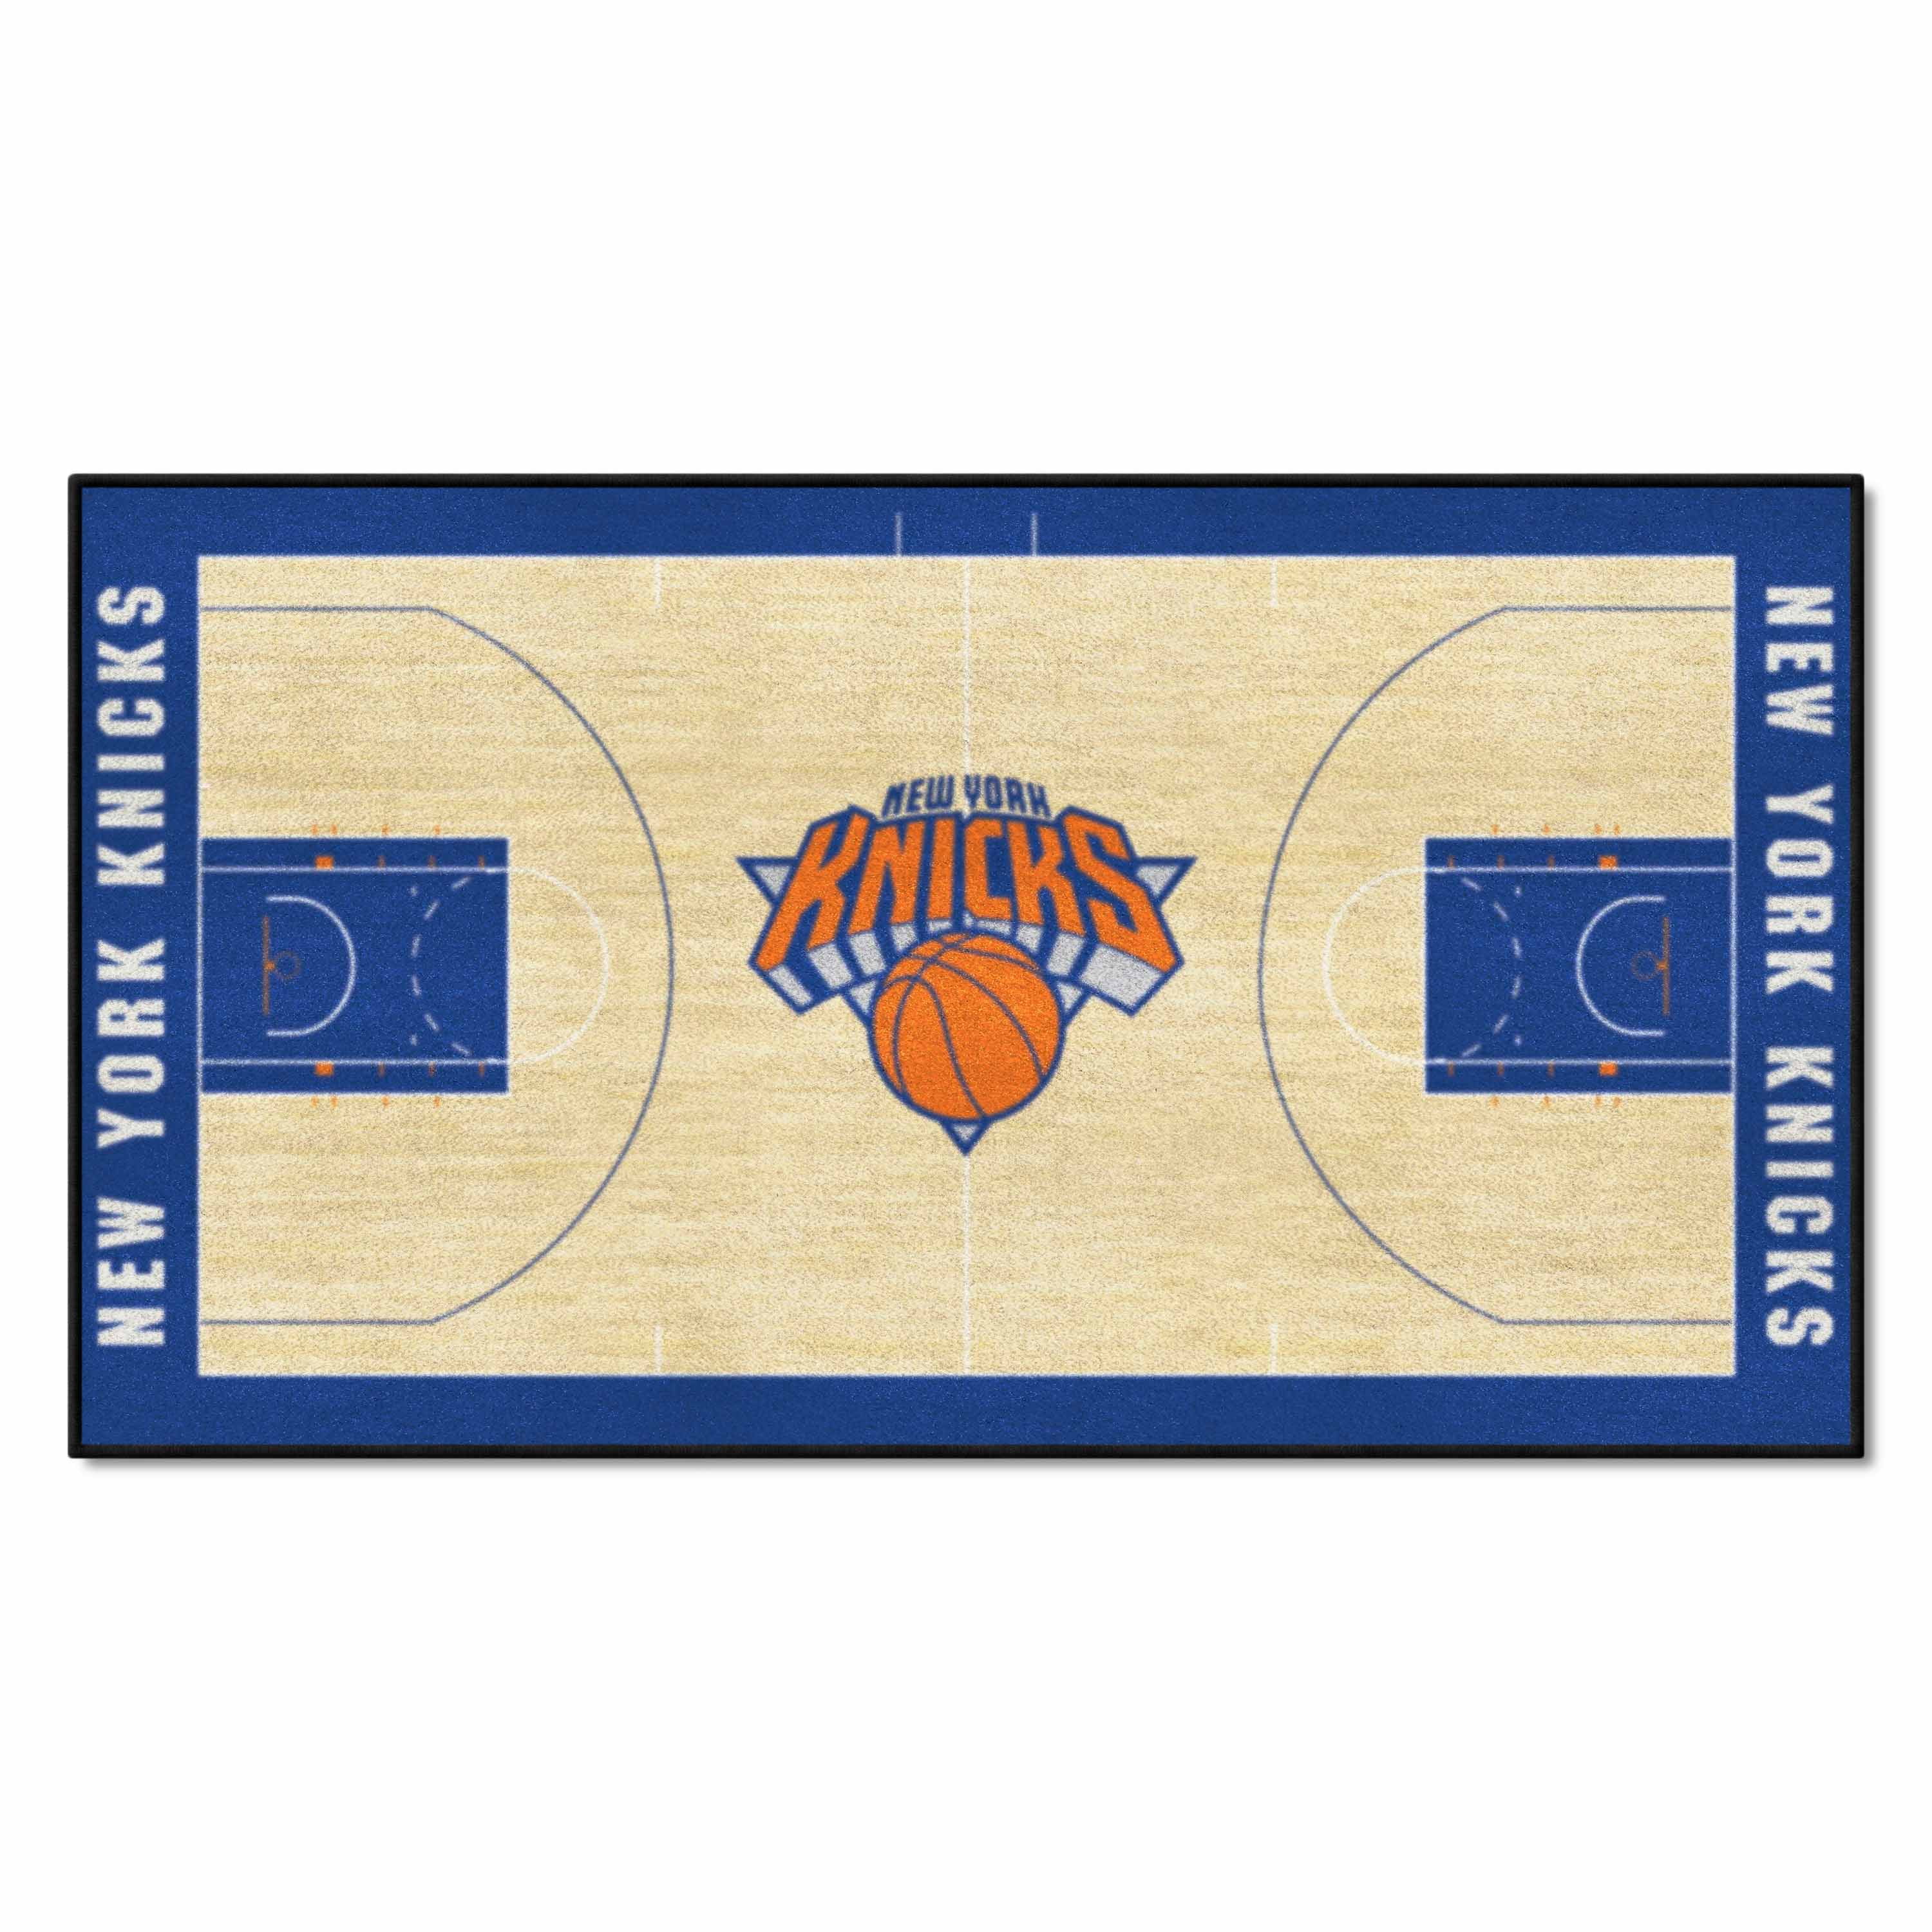 NBA New York Knicks NBA Court Runner 24x44 Walmart com